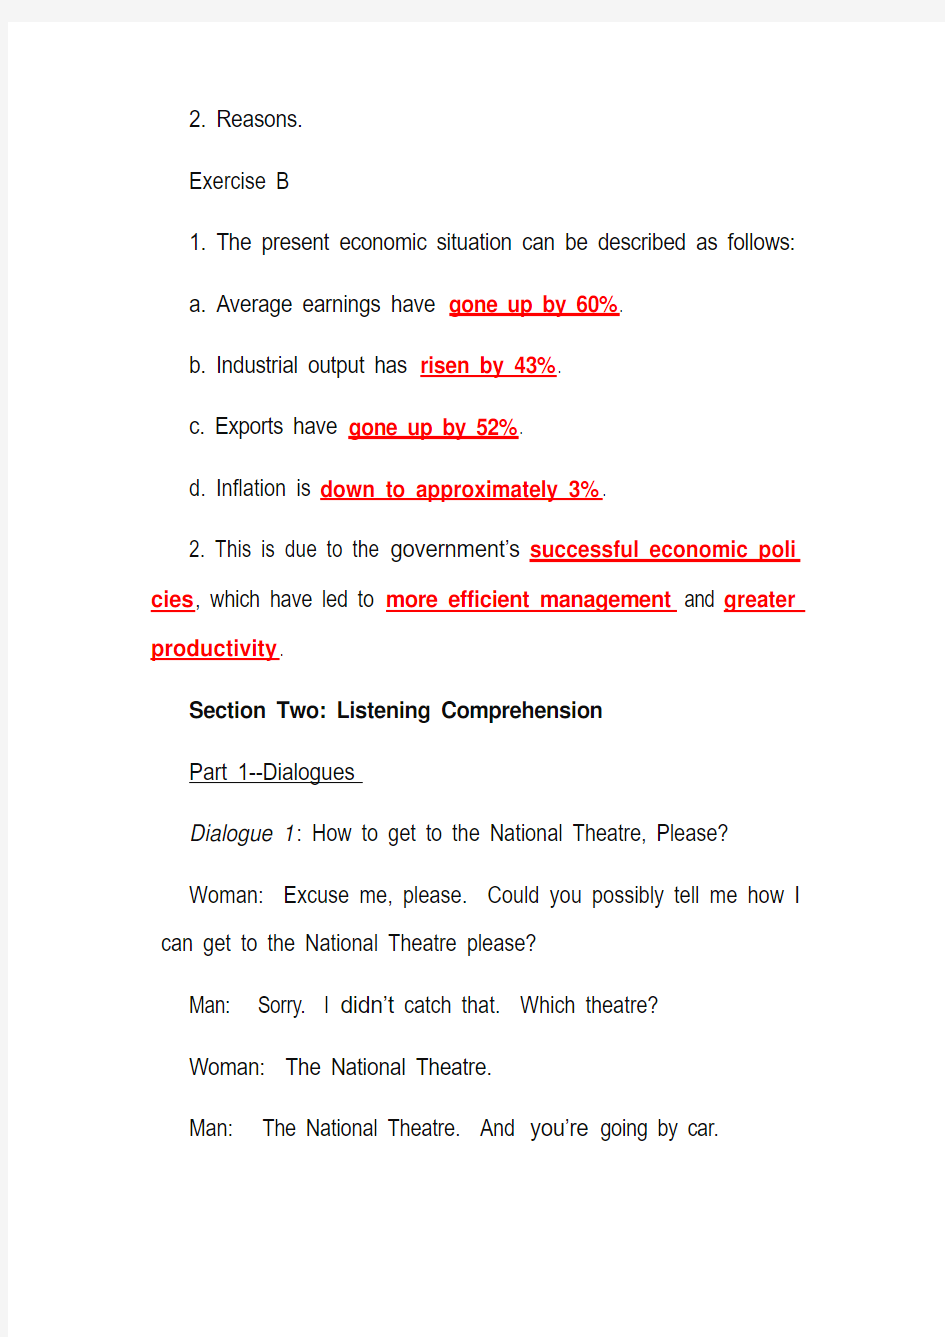 施心远主编《听力教程》1 (第2版)Unit 9听力原文和答案